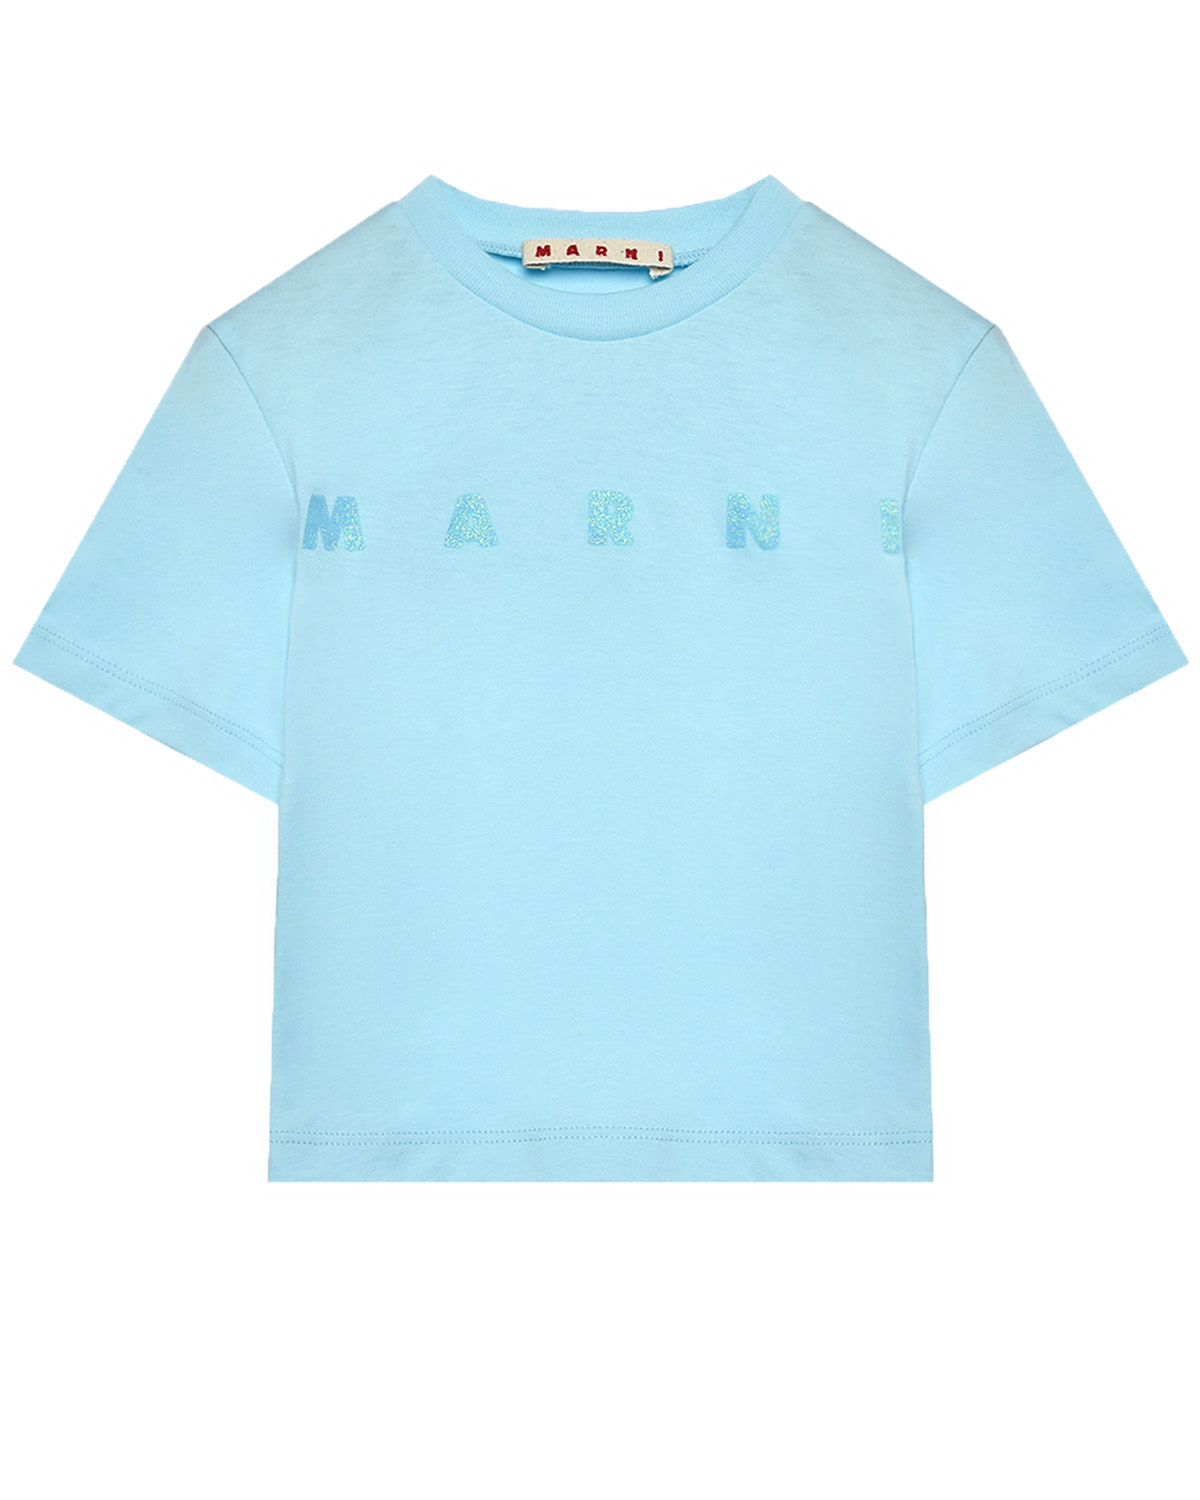 Укороченная футболка с лого, голубая MARNI, размер 128, цвет голубой - фото 1